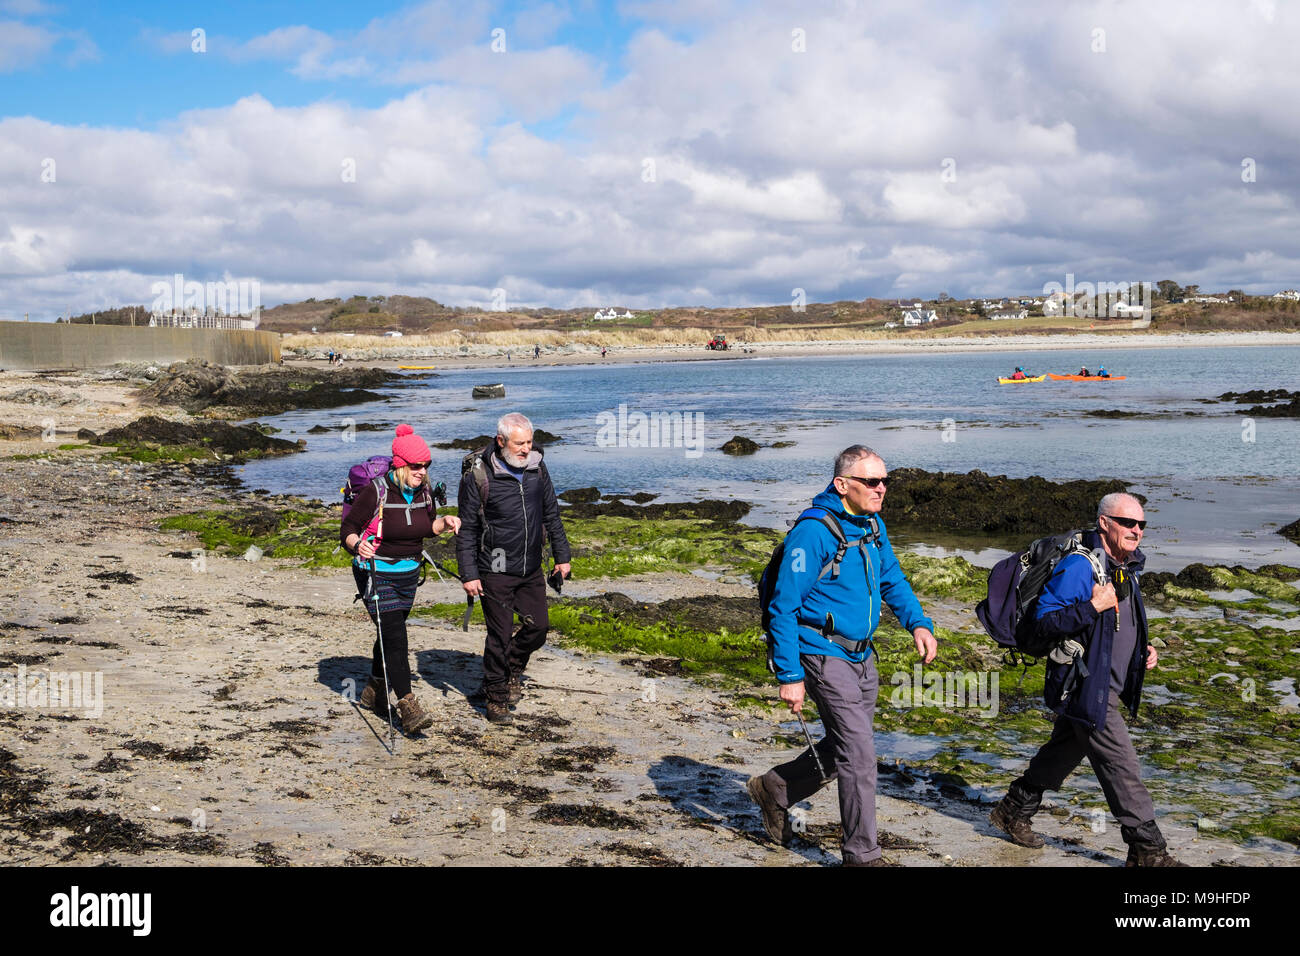 Groupe de randonneurs randonnées autour de Borthwen Bay sur l'île d'Anglesey sentier côtier. Rhoscolyn, Holy Island, île d'Anglesey, au Pays de Galles, Royaume-Uni, Angleterre Banque D'Images